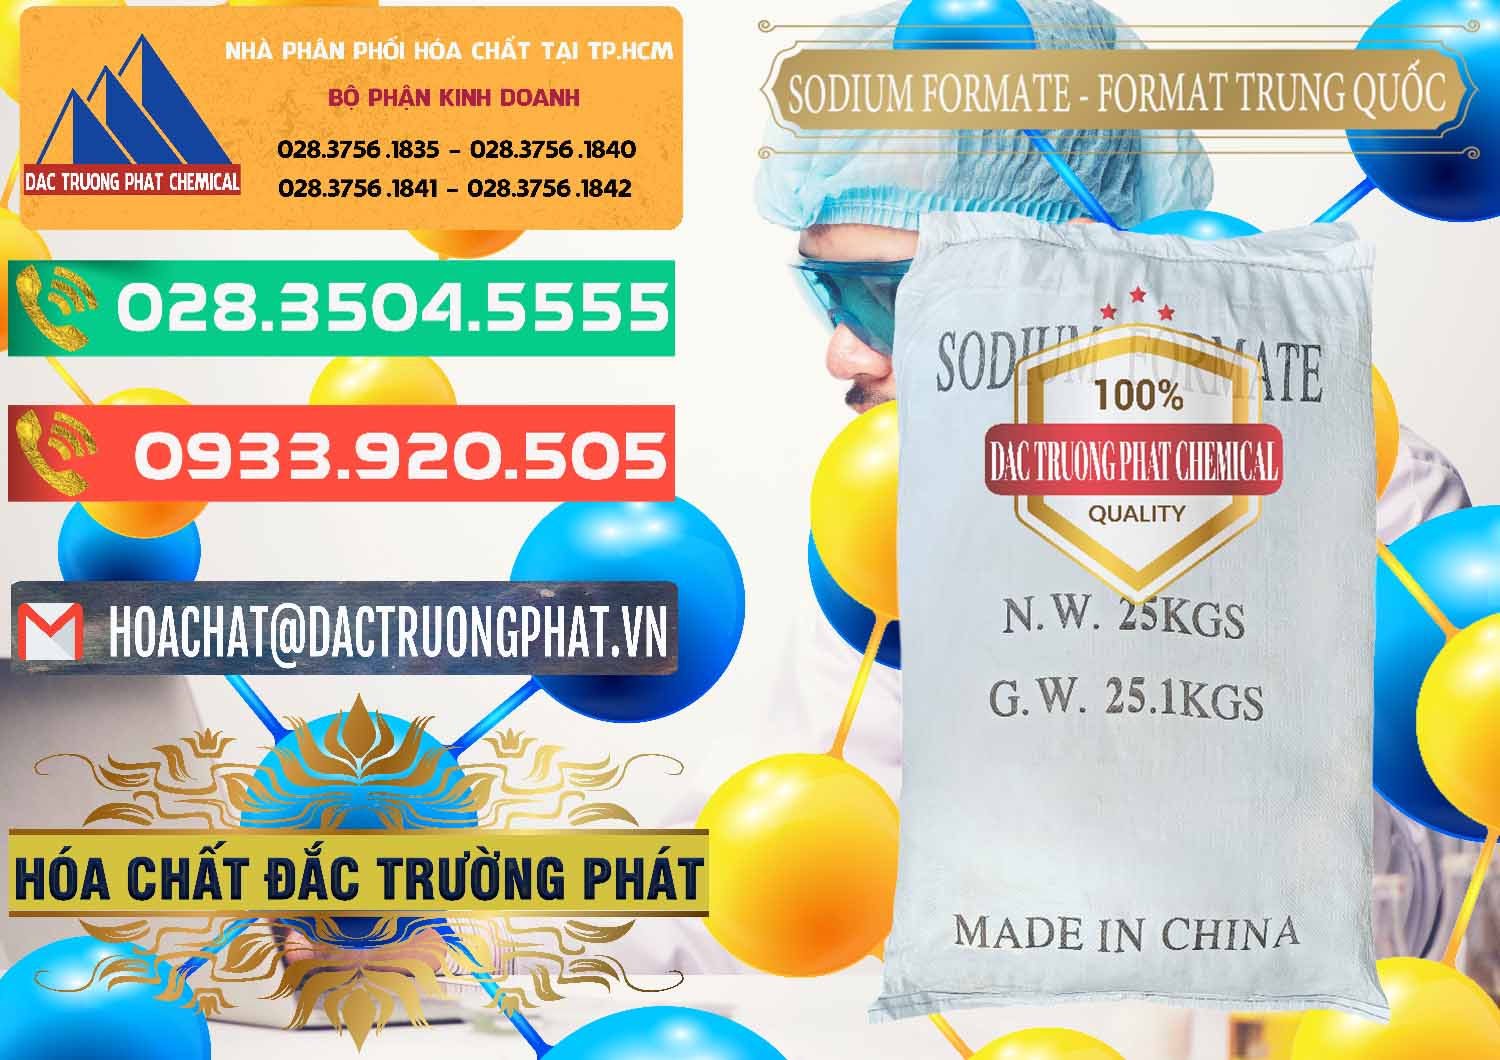 Đơn vị chuyên phân phối _ bán Sodium Formate - Natri Format Trung Quốc China - 0142 - Nơi chuyên cung cấp - kinh doanh hóa chất tại TP.HCM - congtyhoachat.com.vn